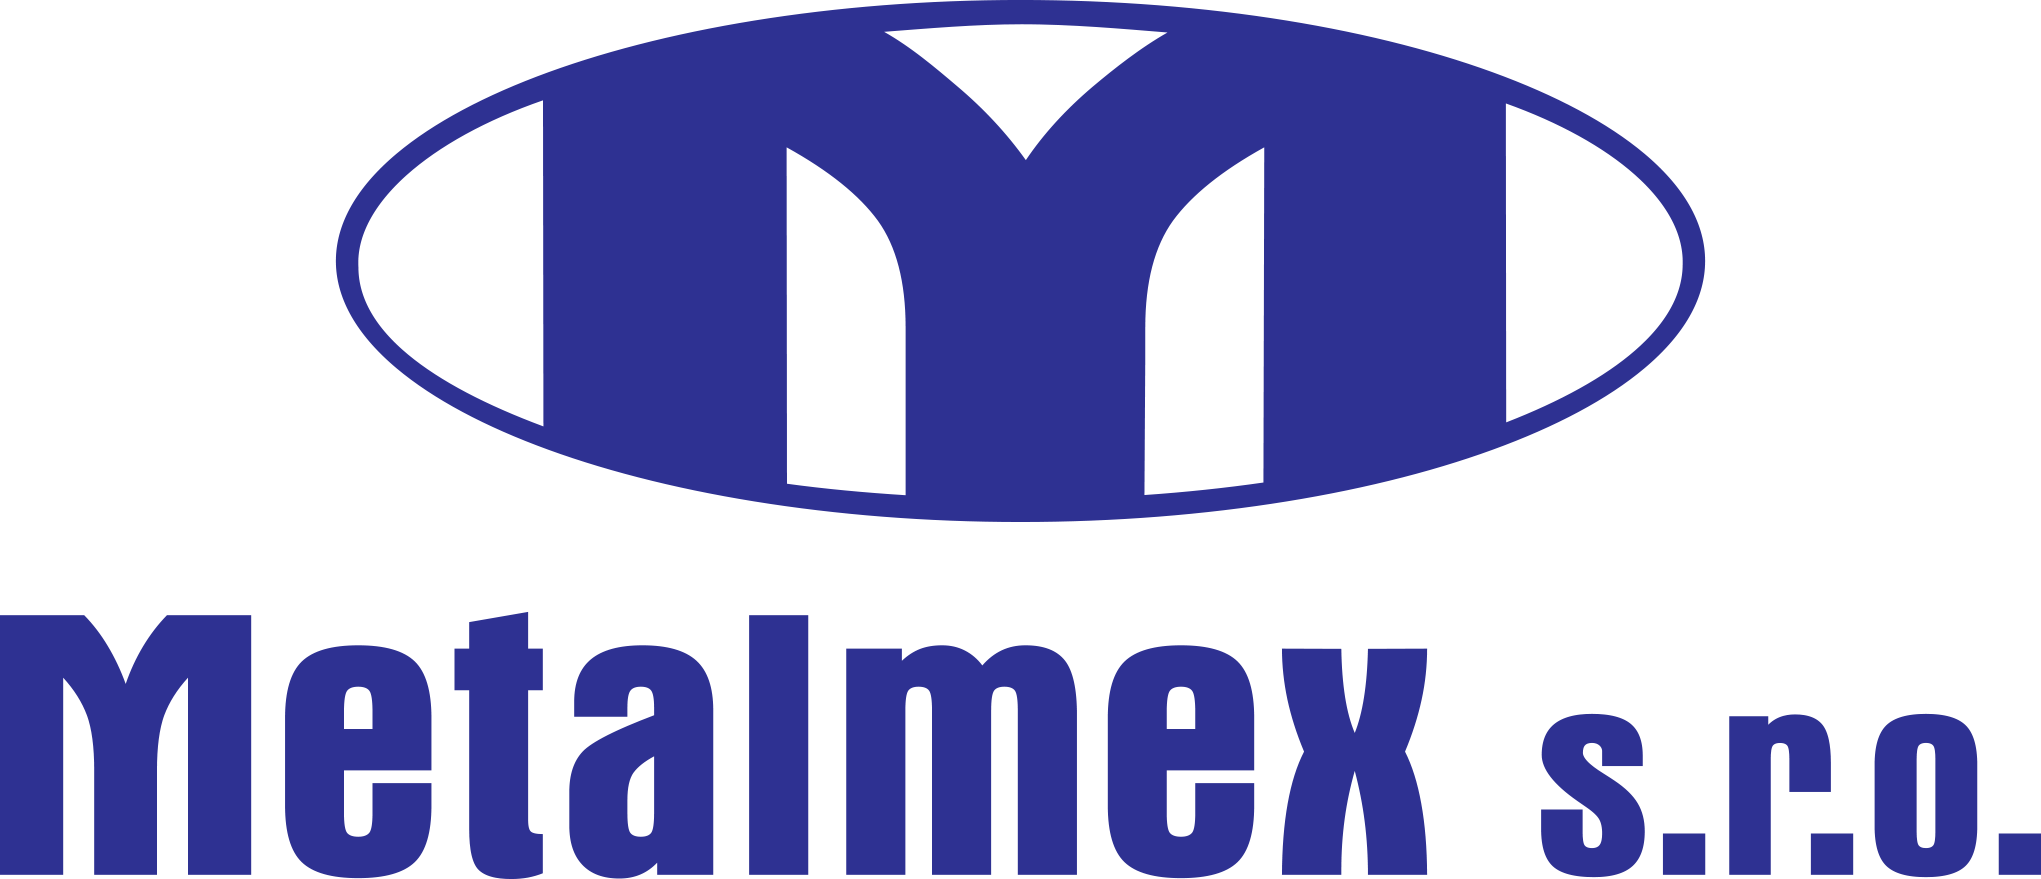 Metalmex strojní výroba